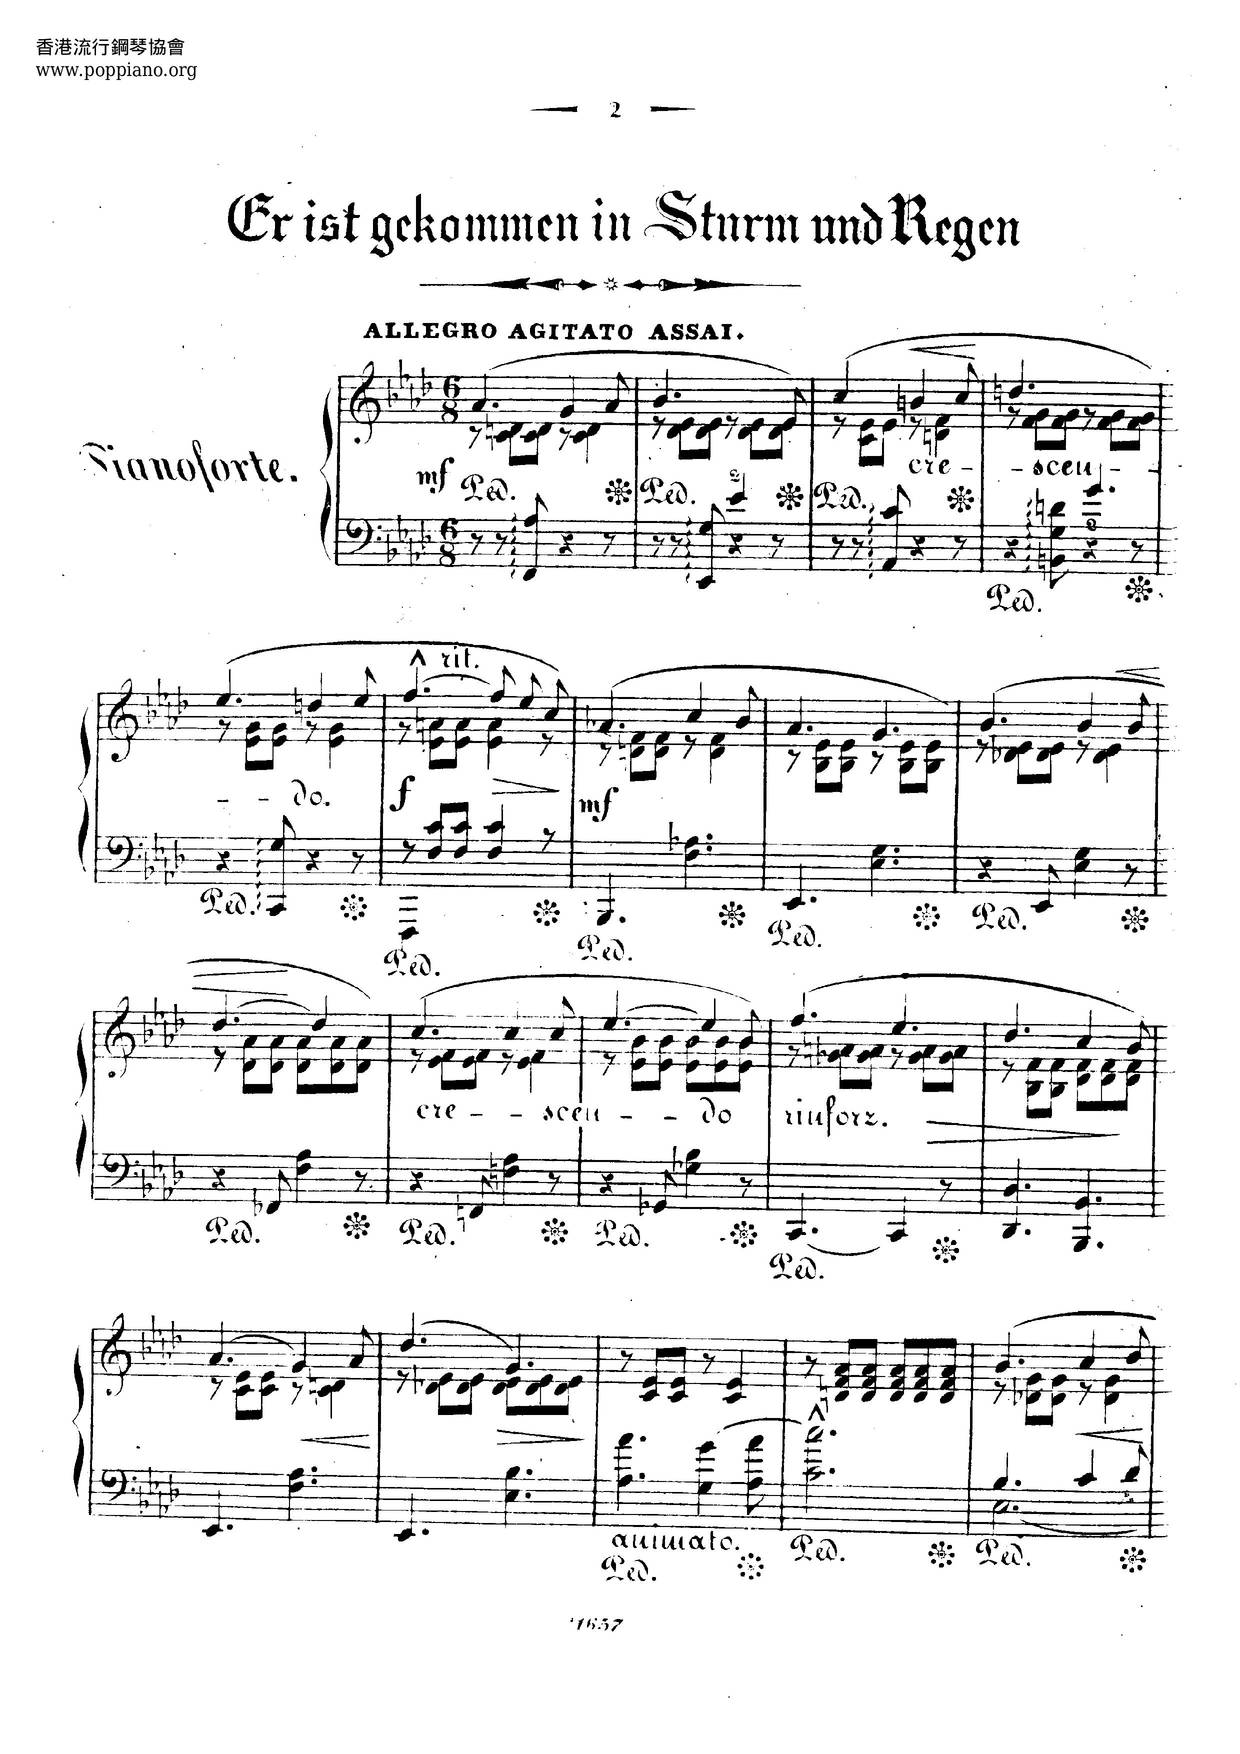 Er Ist Gekommen In Sturm Und Regen, Lied Von Robert Franz, S.488ピアノ譜